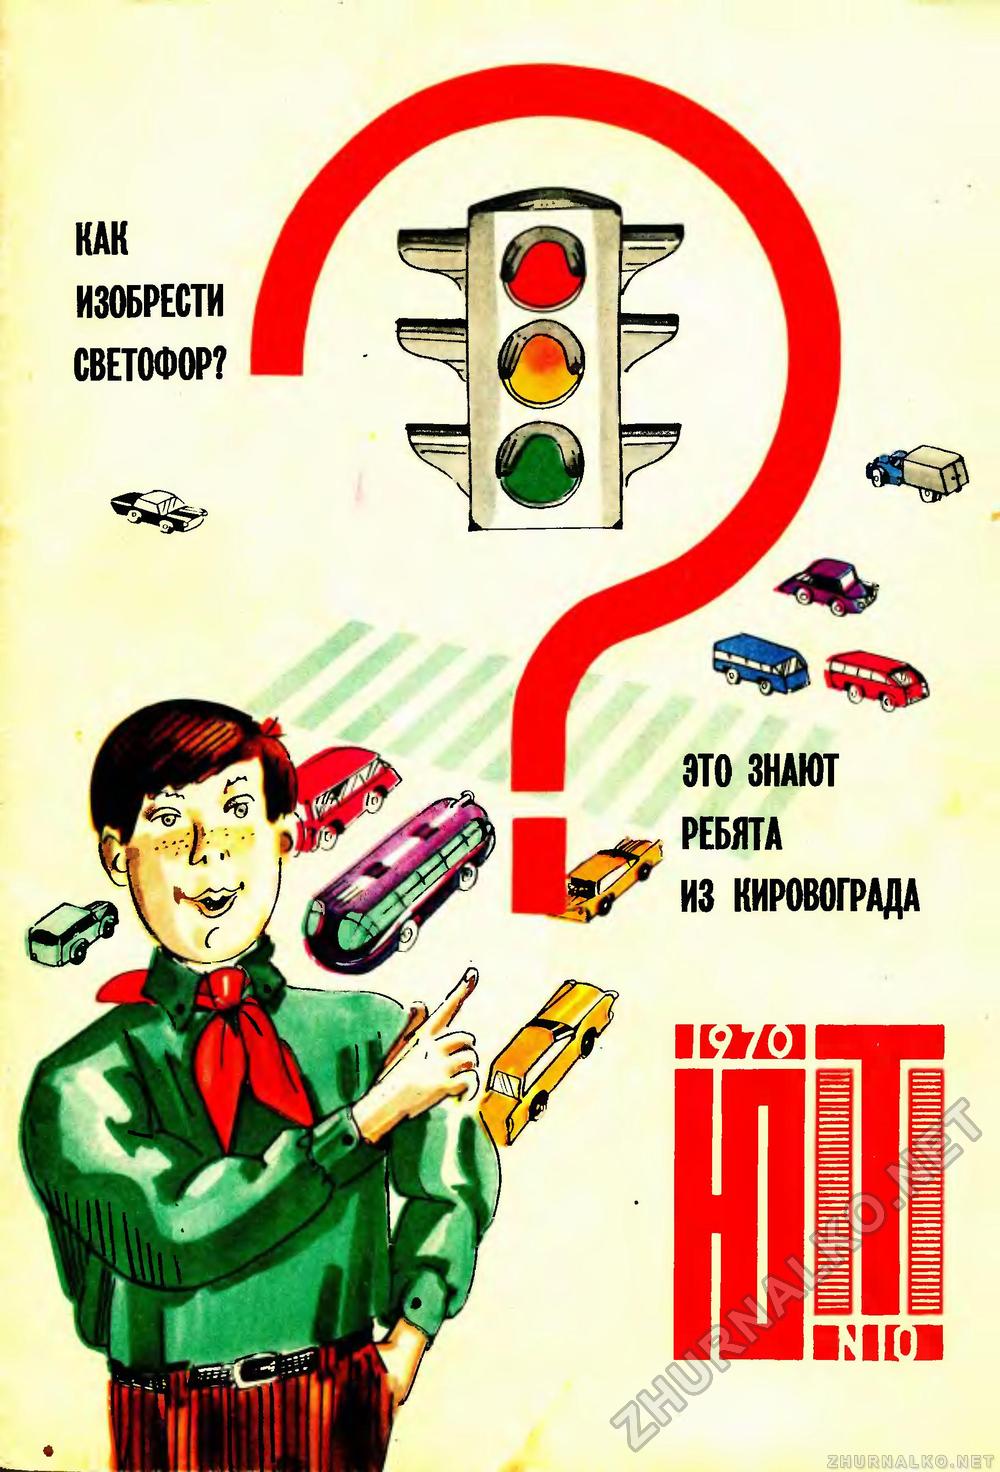   1970-10,  1